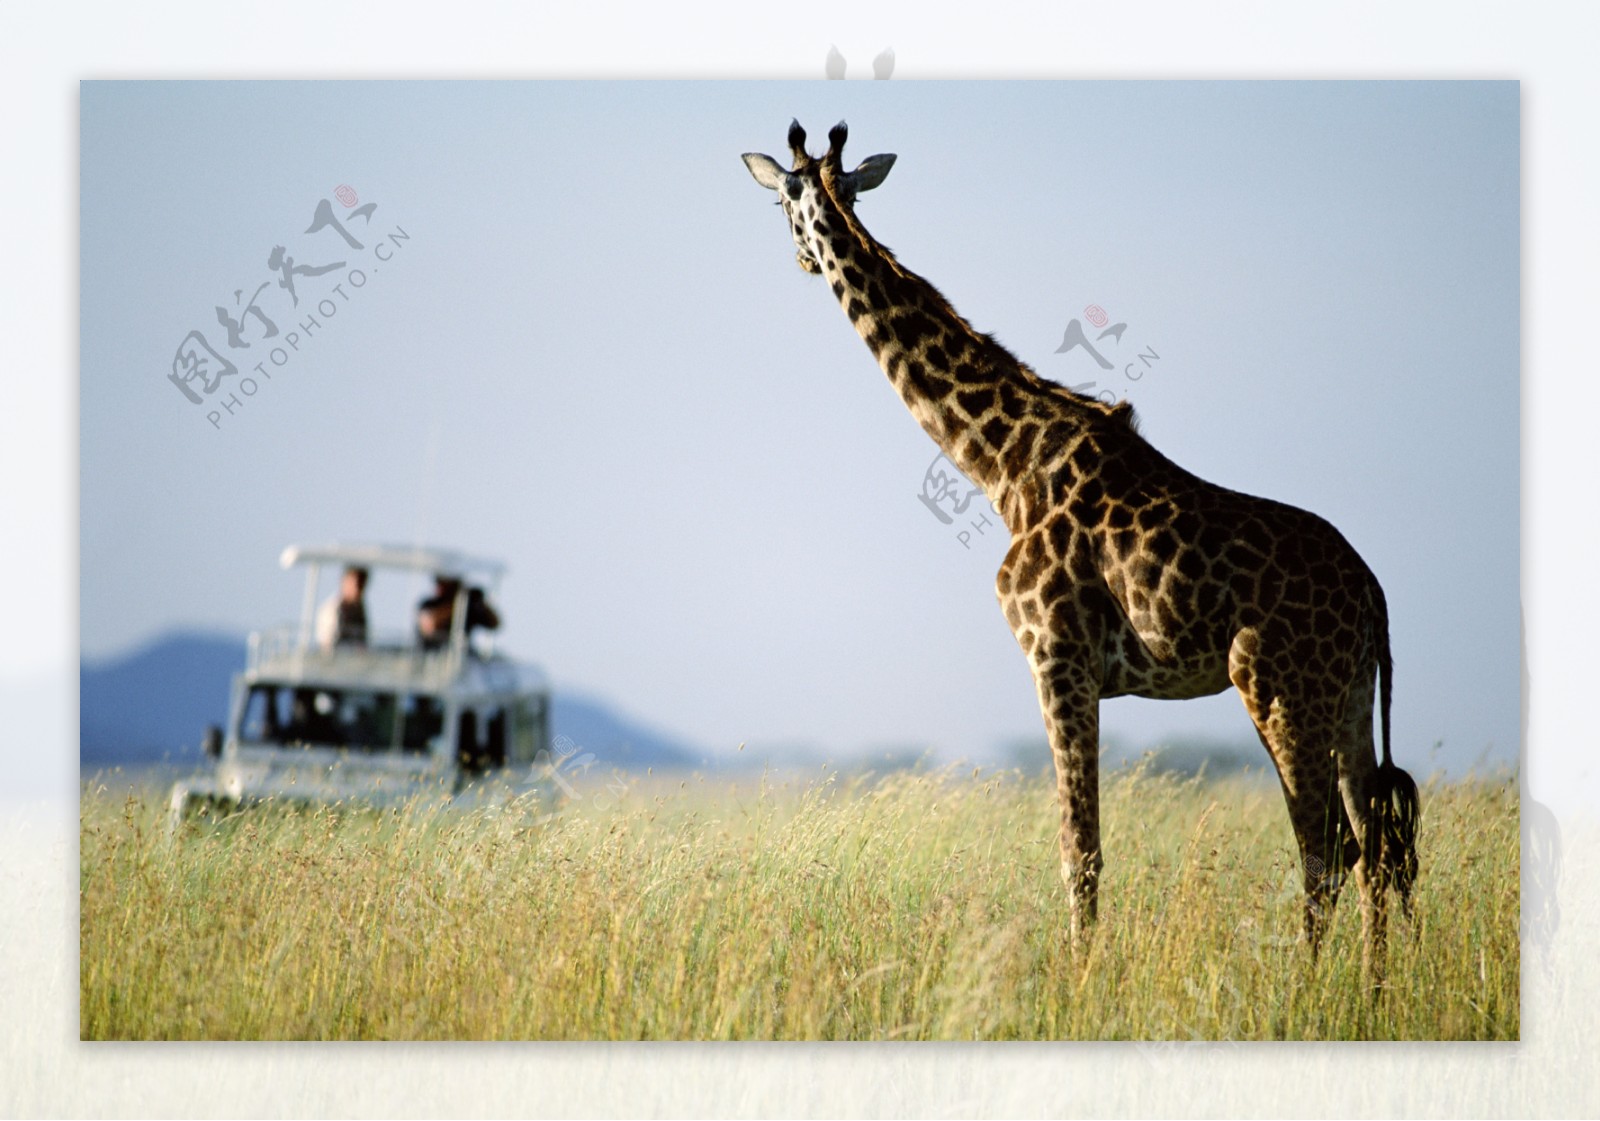 非洲野生动物长颈鹿